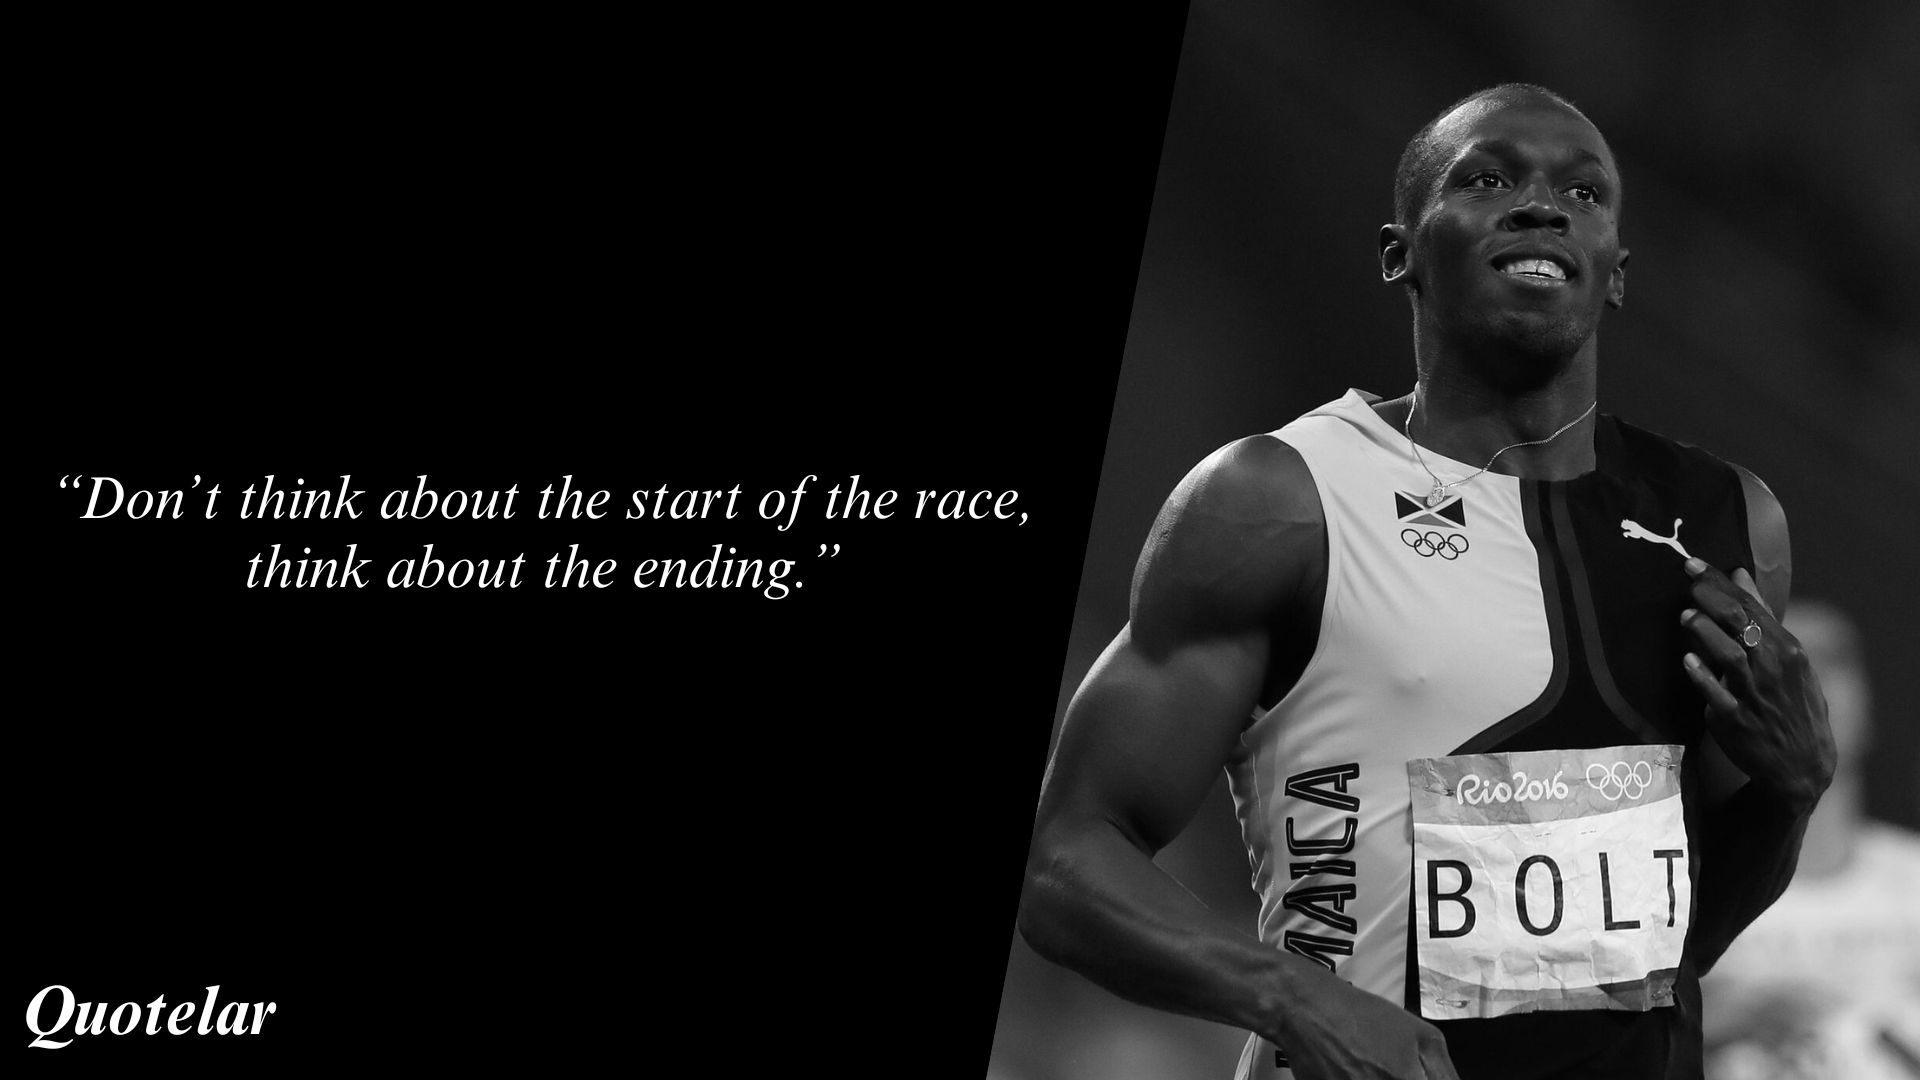 Usain Bolt Quotes